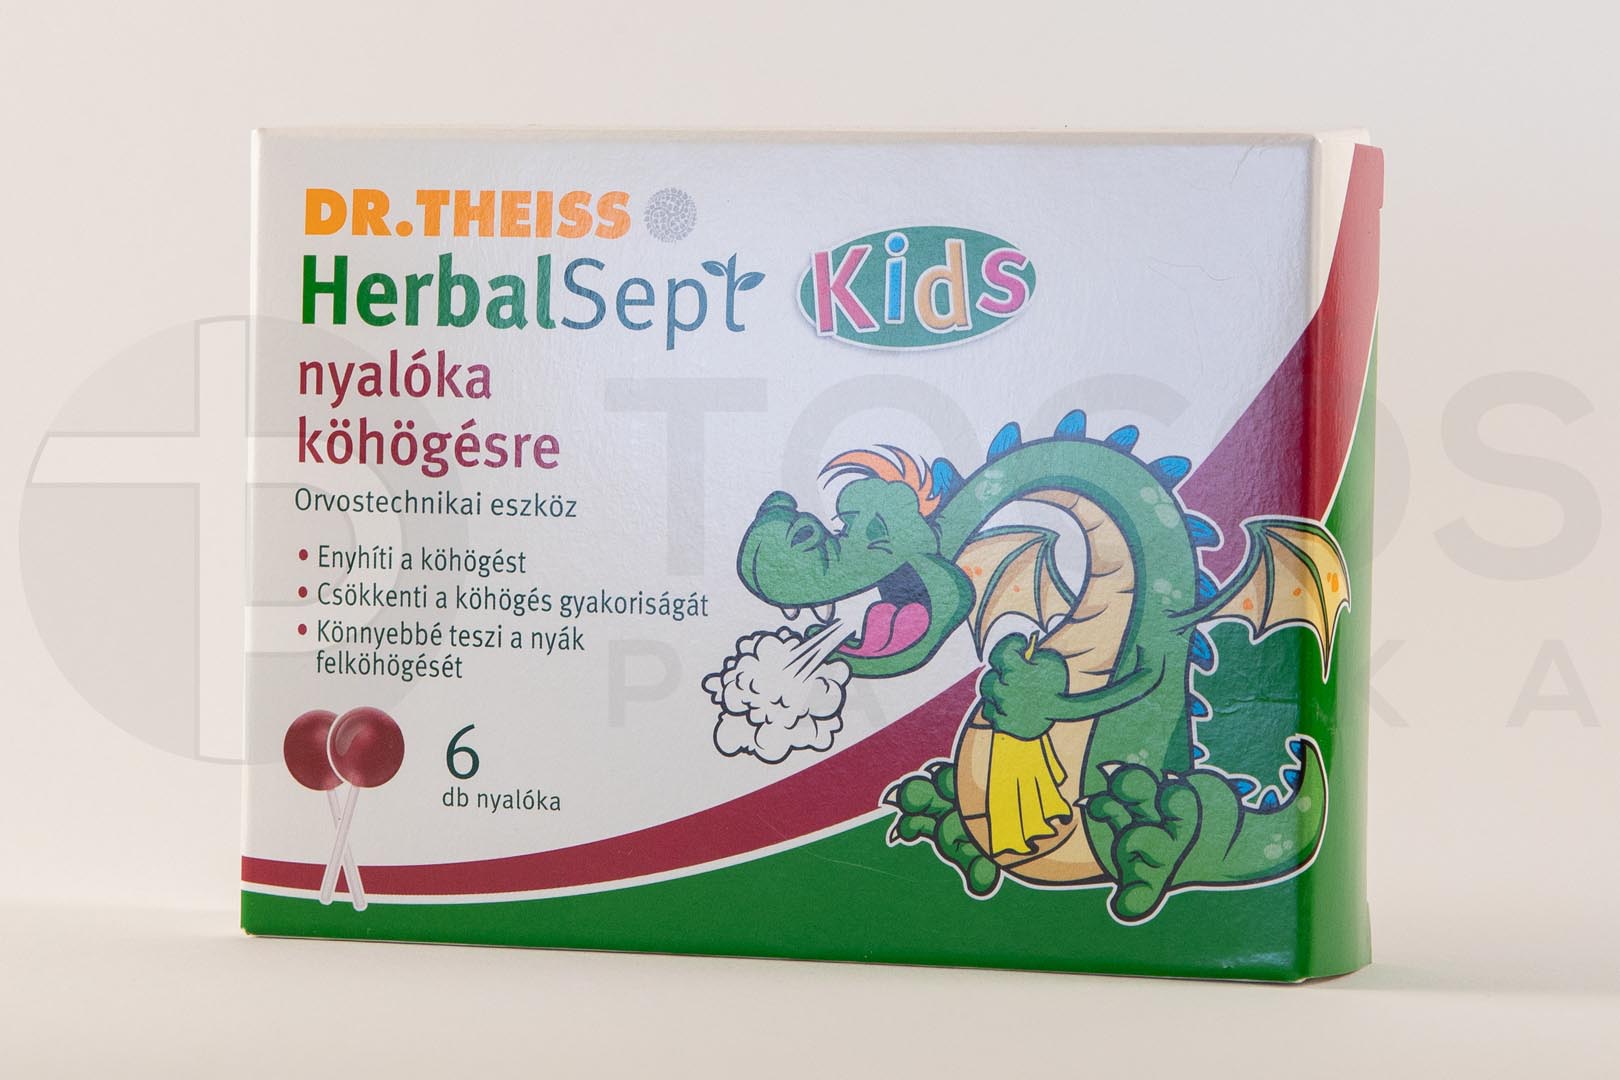 Dr. Theiss HerbalSept Kids nyalóka köhögésre 6x